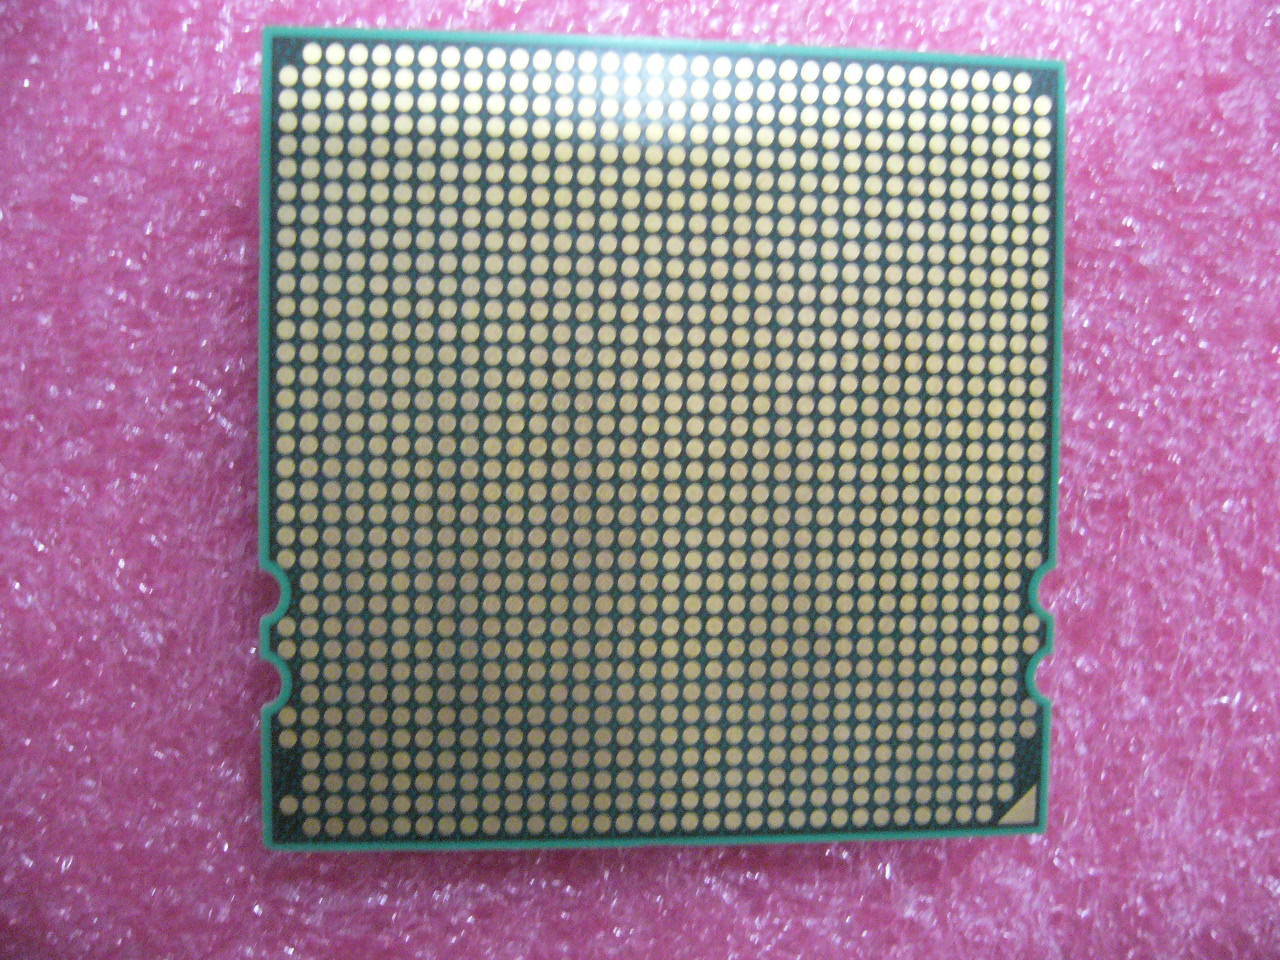 QTY 1x AMD Opteron 8360 SE 2.5 GHz Quad-Core (OS8360YAL4BGD) CPU Socket F 1207 - zum Schließen ins Bild klicken